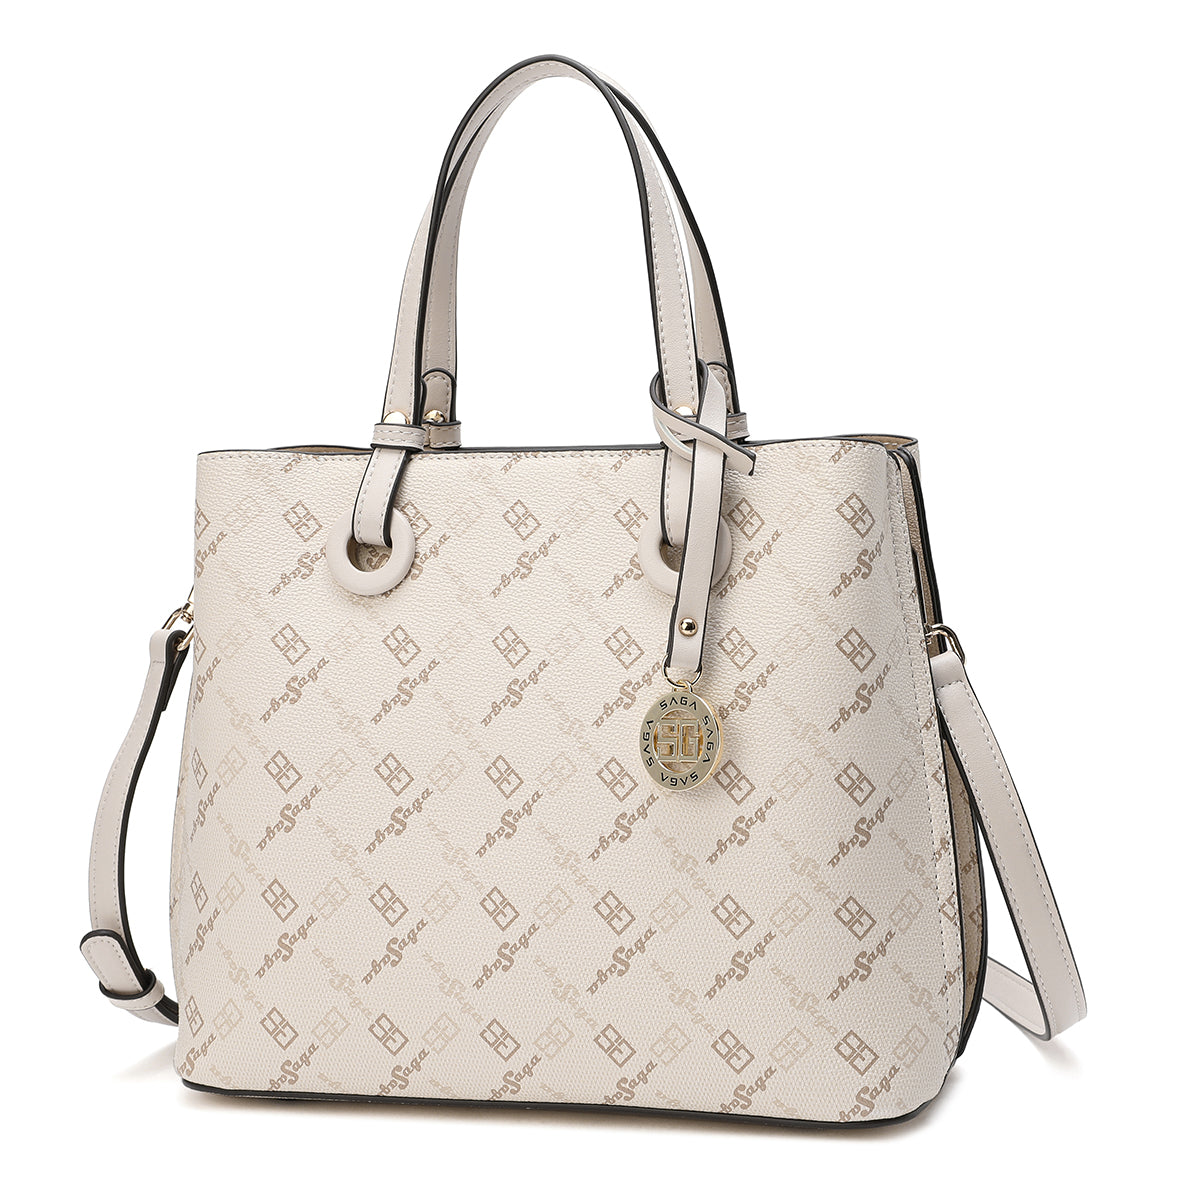 Handbag with shoulder strap, width 27 cm, cream color